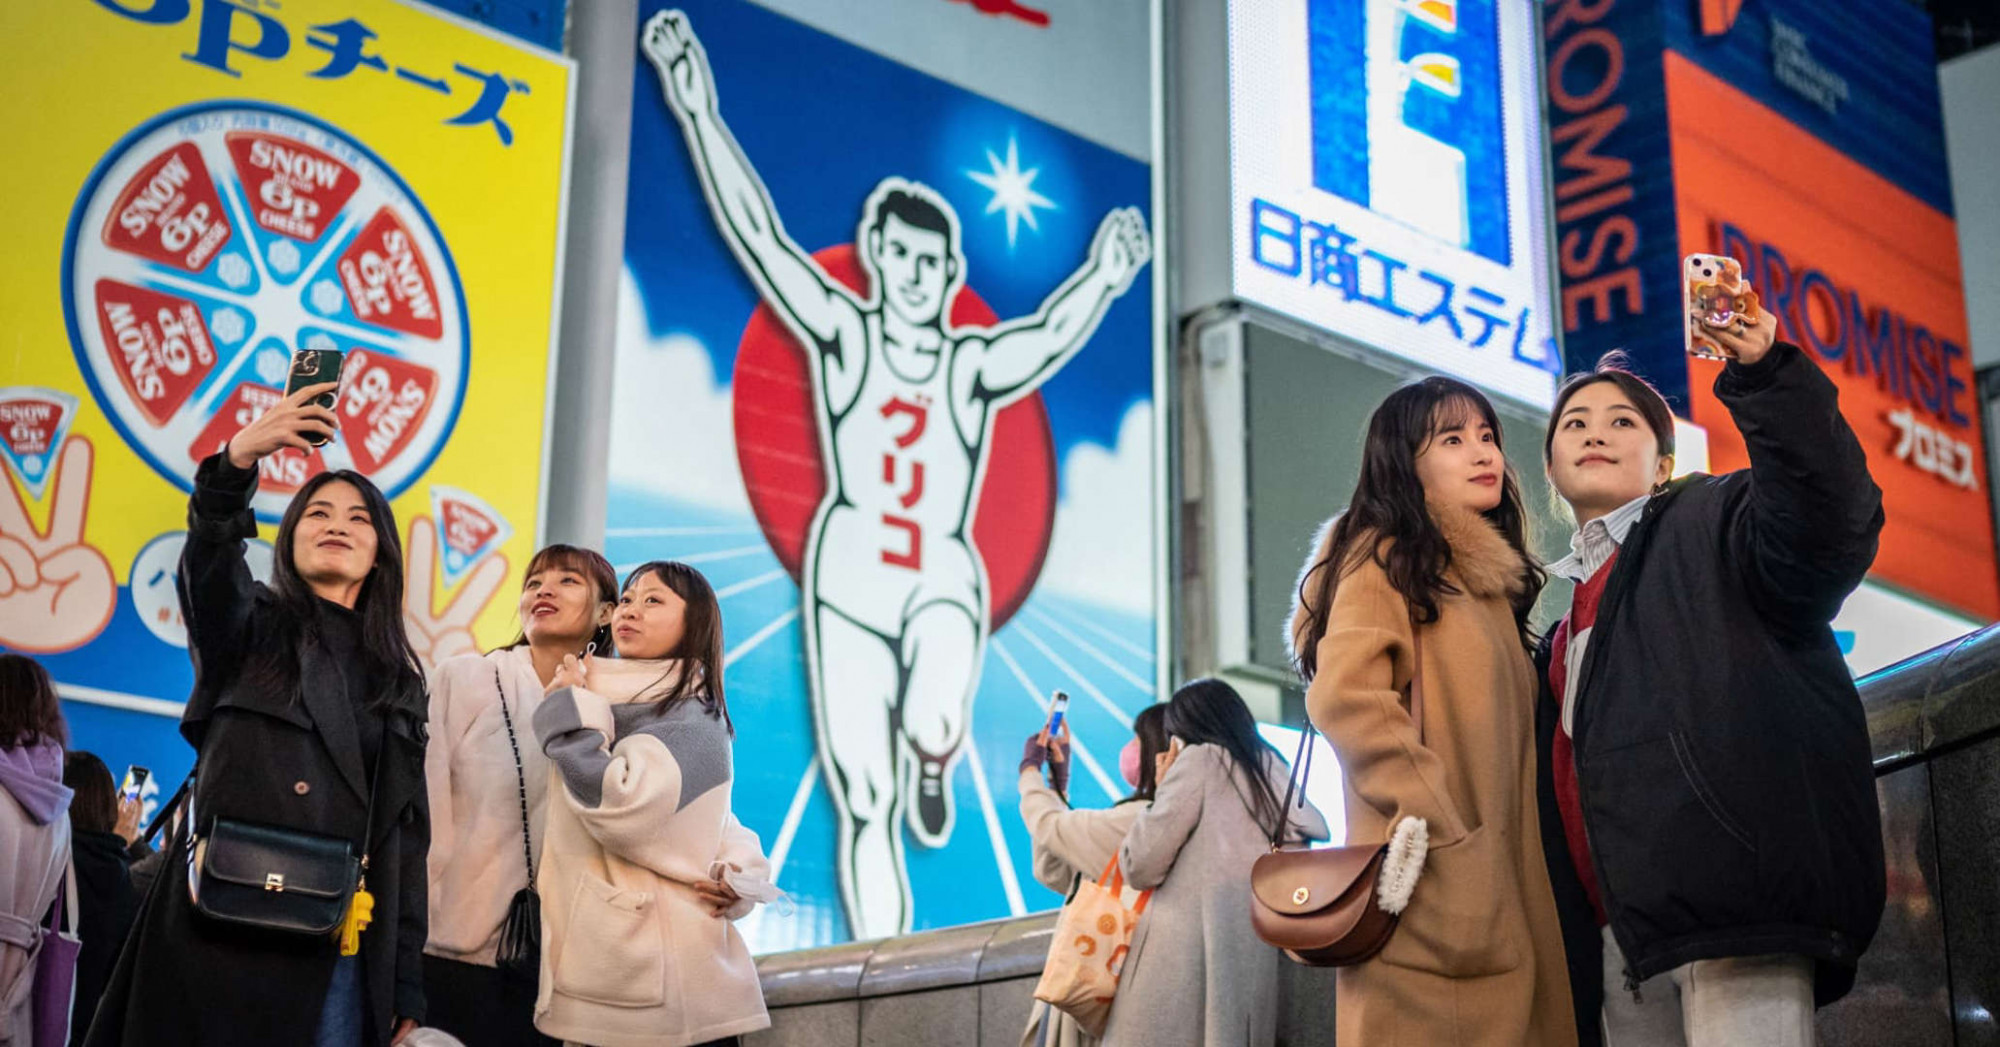 Người dân Nhật Bản không muốn đi du lịch nước ngoài. Thay vào đó, họ lựa chọn du lịch nội địa - Ảnh: CNBC 